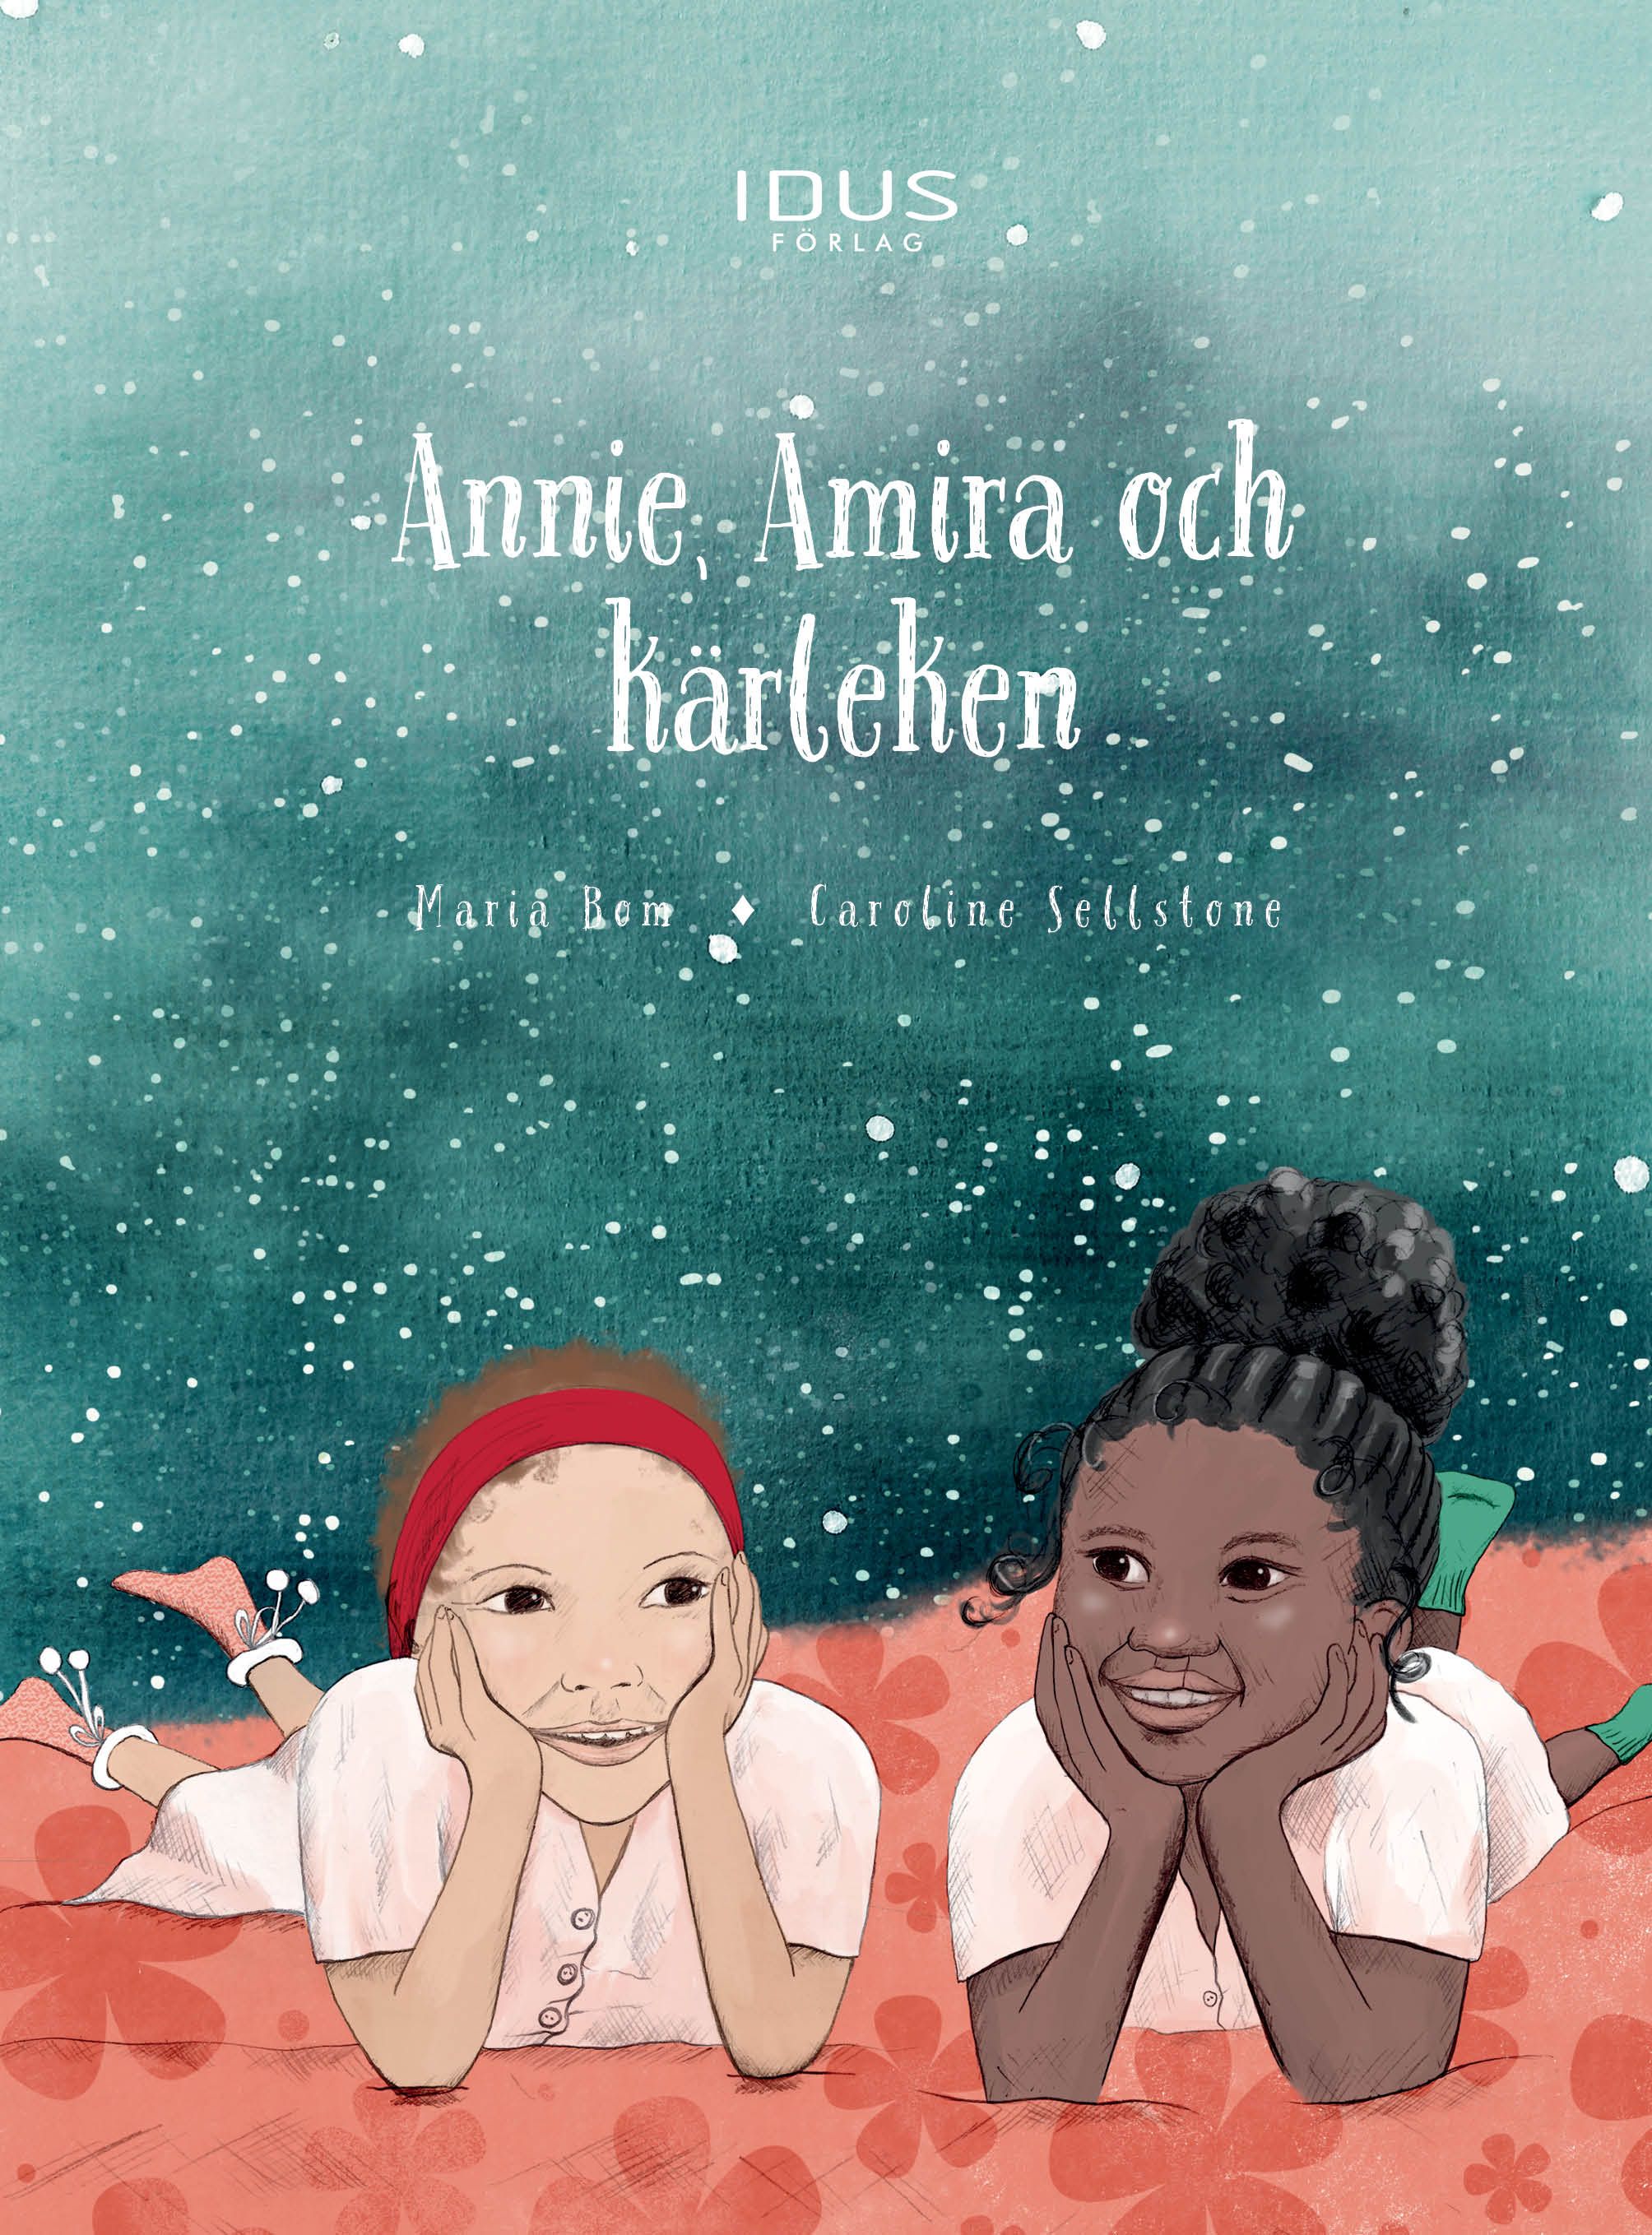 Annie, Amira och kärleken, e-bok av Maria Bom